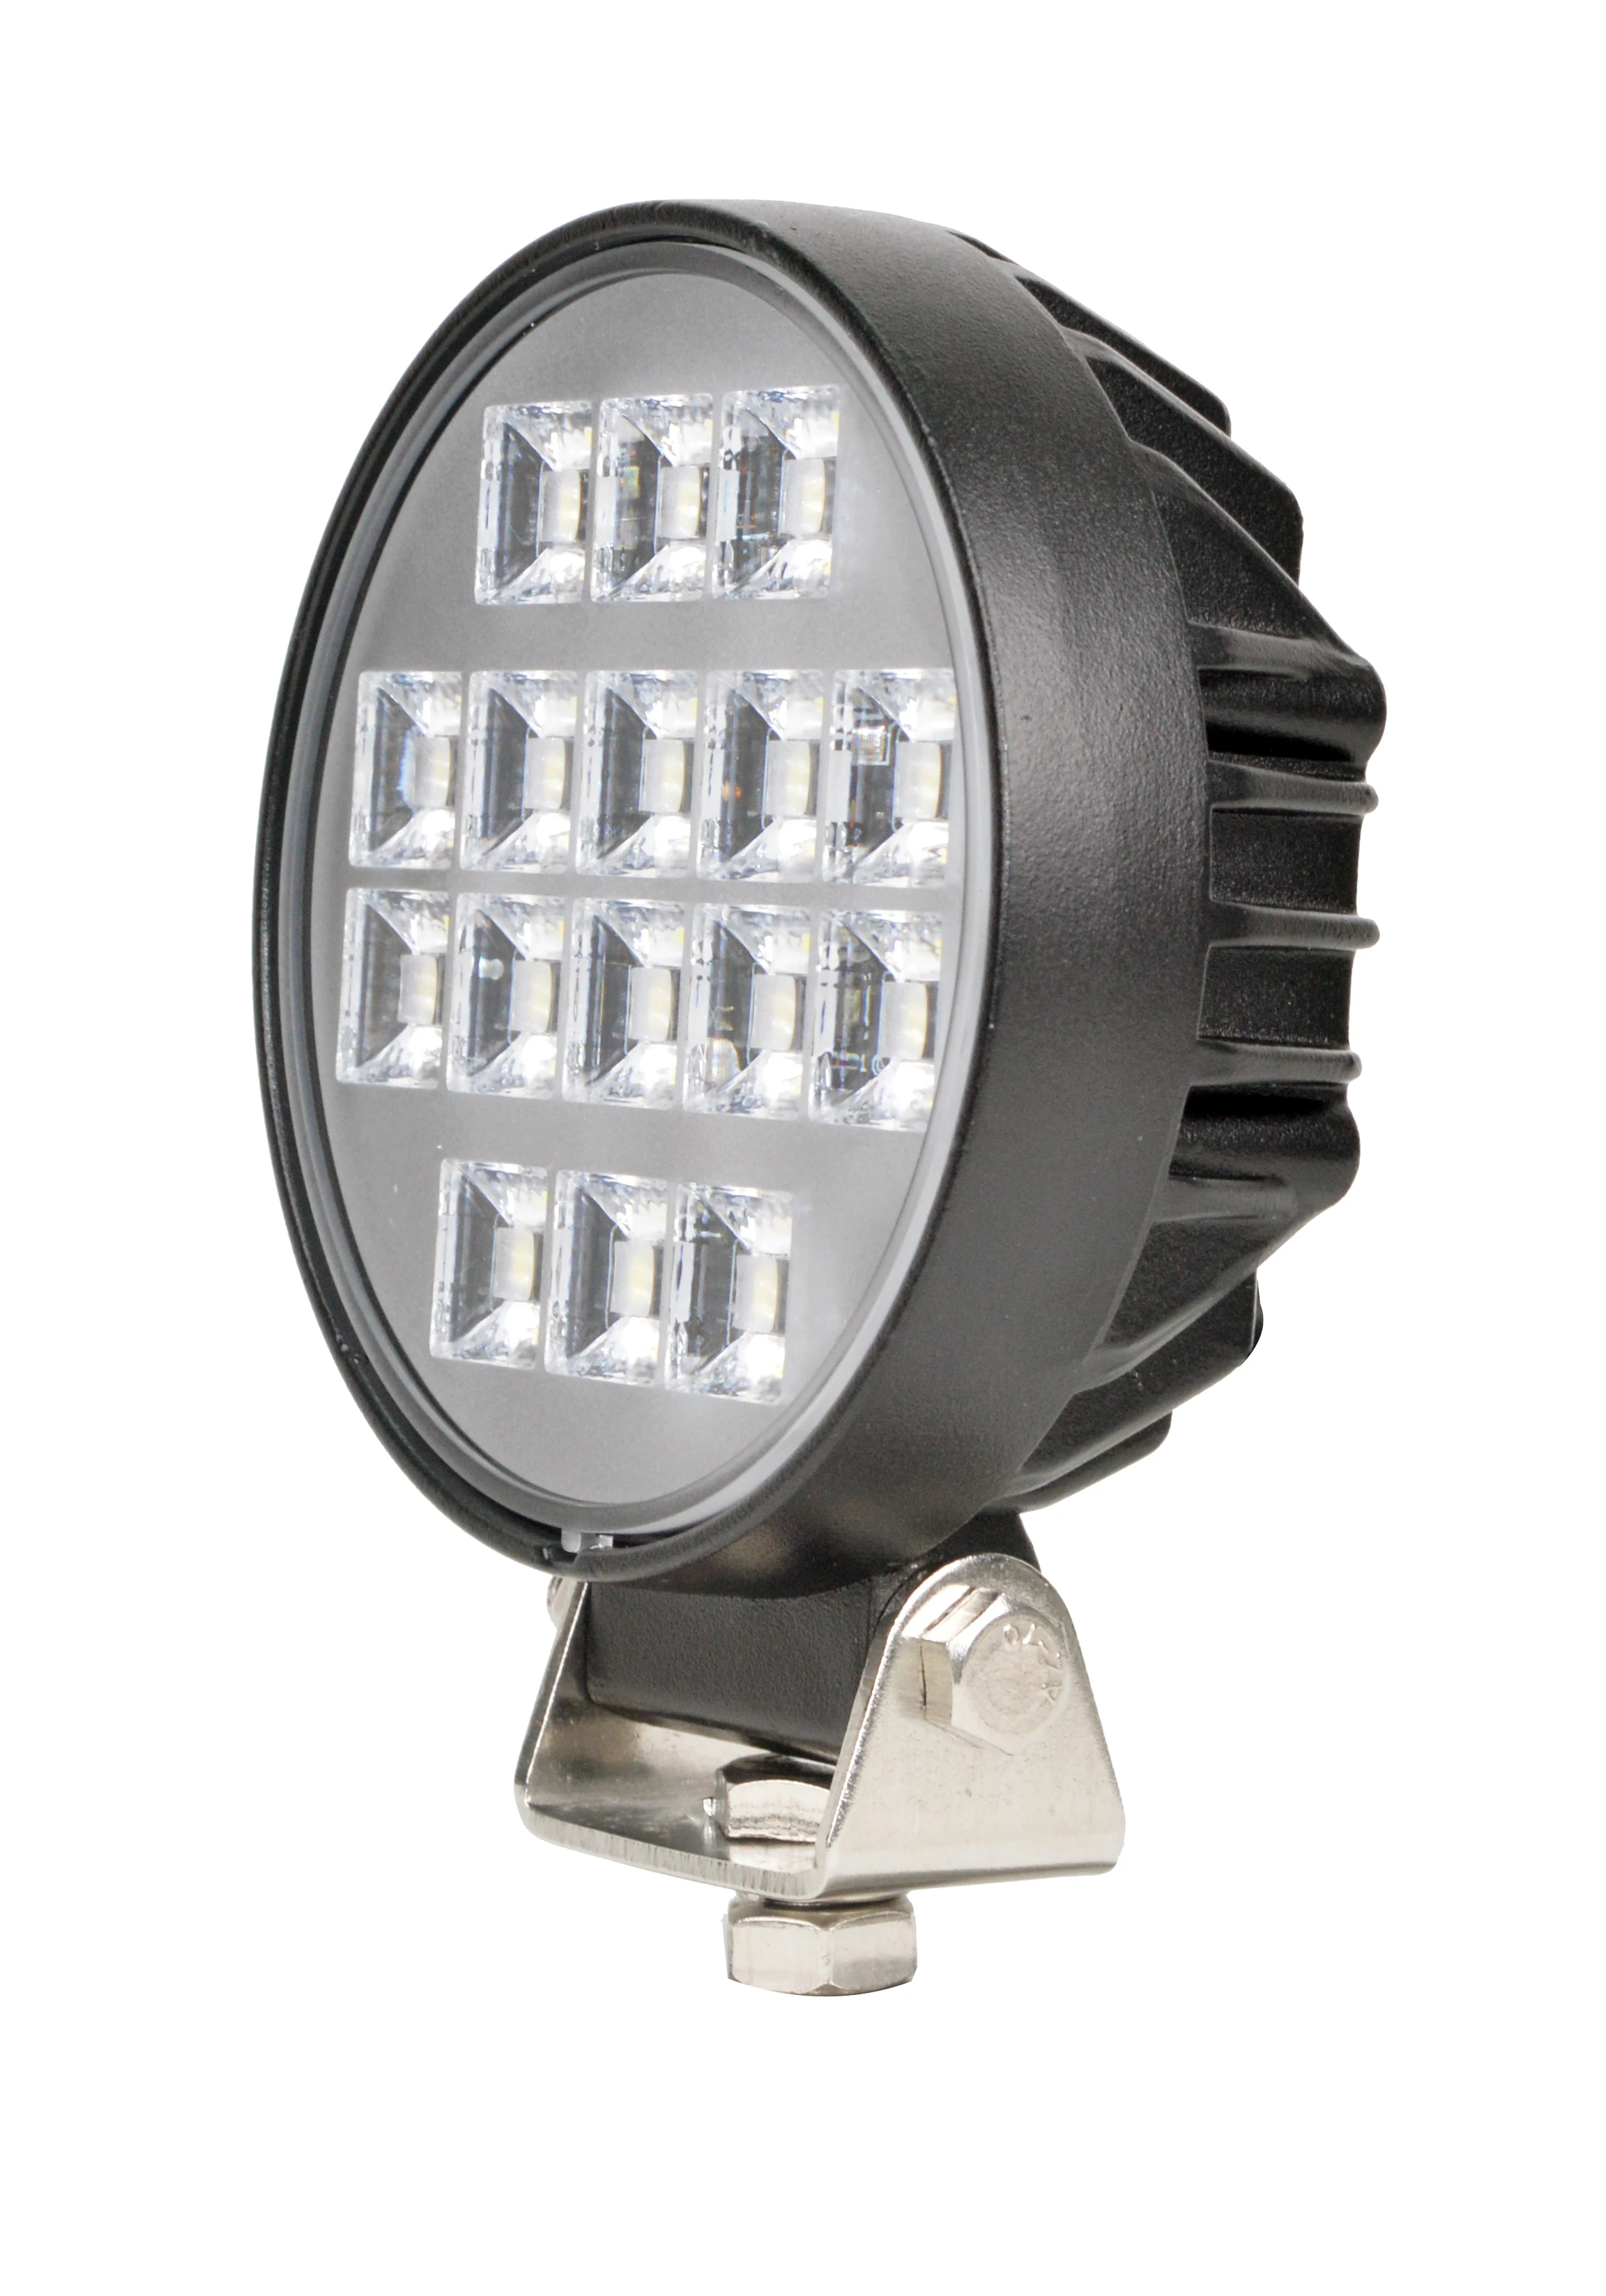 16W Round LED Work Light Spotlight Floodlight LED Light Bar For 4x4 Offroad ATV UTV Truck Tractor